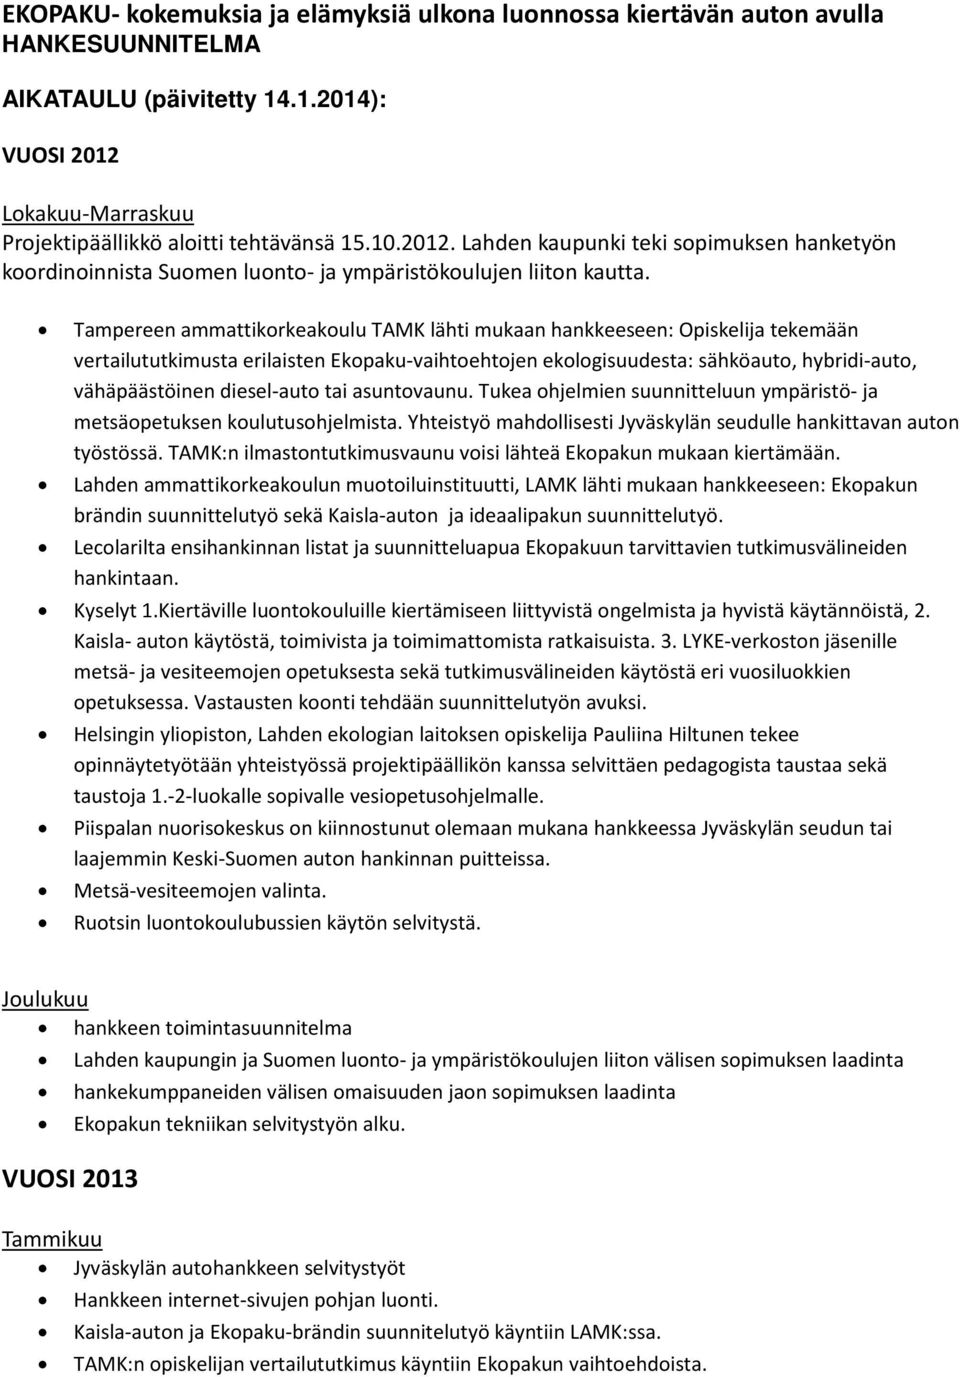 Tampereen ammattikorkeakoulu TAMK lähti mukaan hankkeeseen: Opiskelija tekemään vertailututkimusta erilaisten Ekopaku-vaihtoehtojen ekologisuudesta: sähköauto, hybridi-auto, vähäpäästöinen